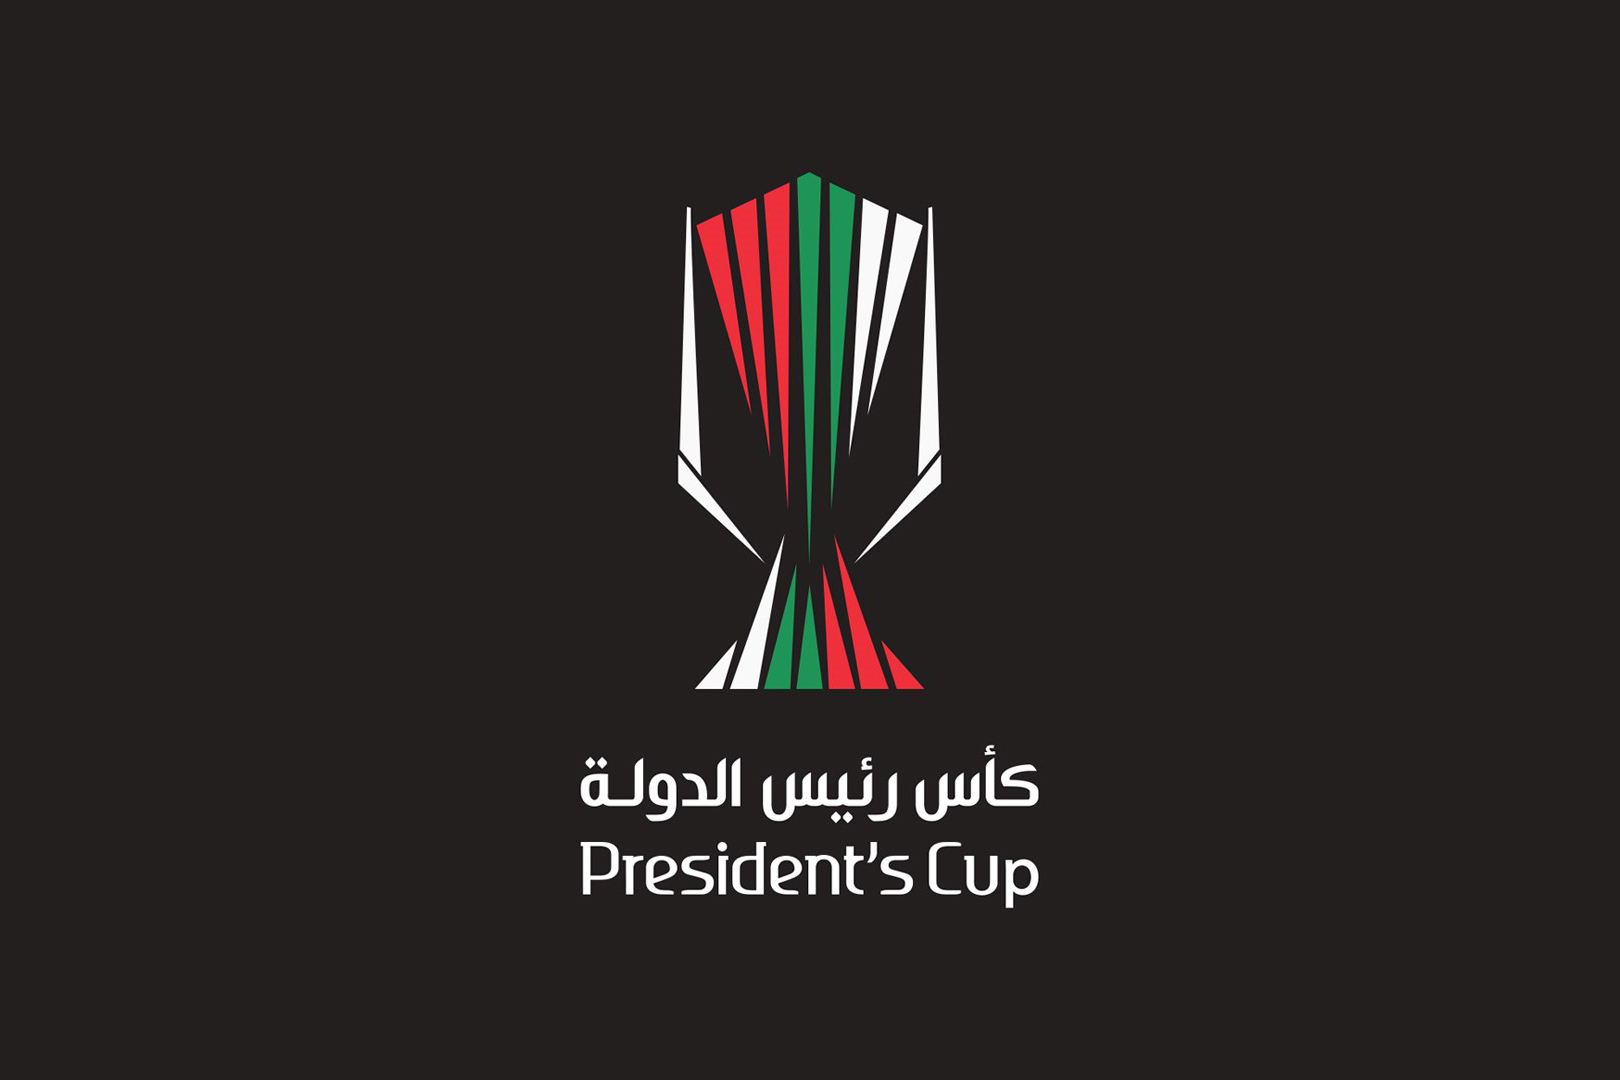 UAE President’s Cup final postponed until next season